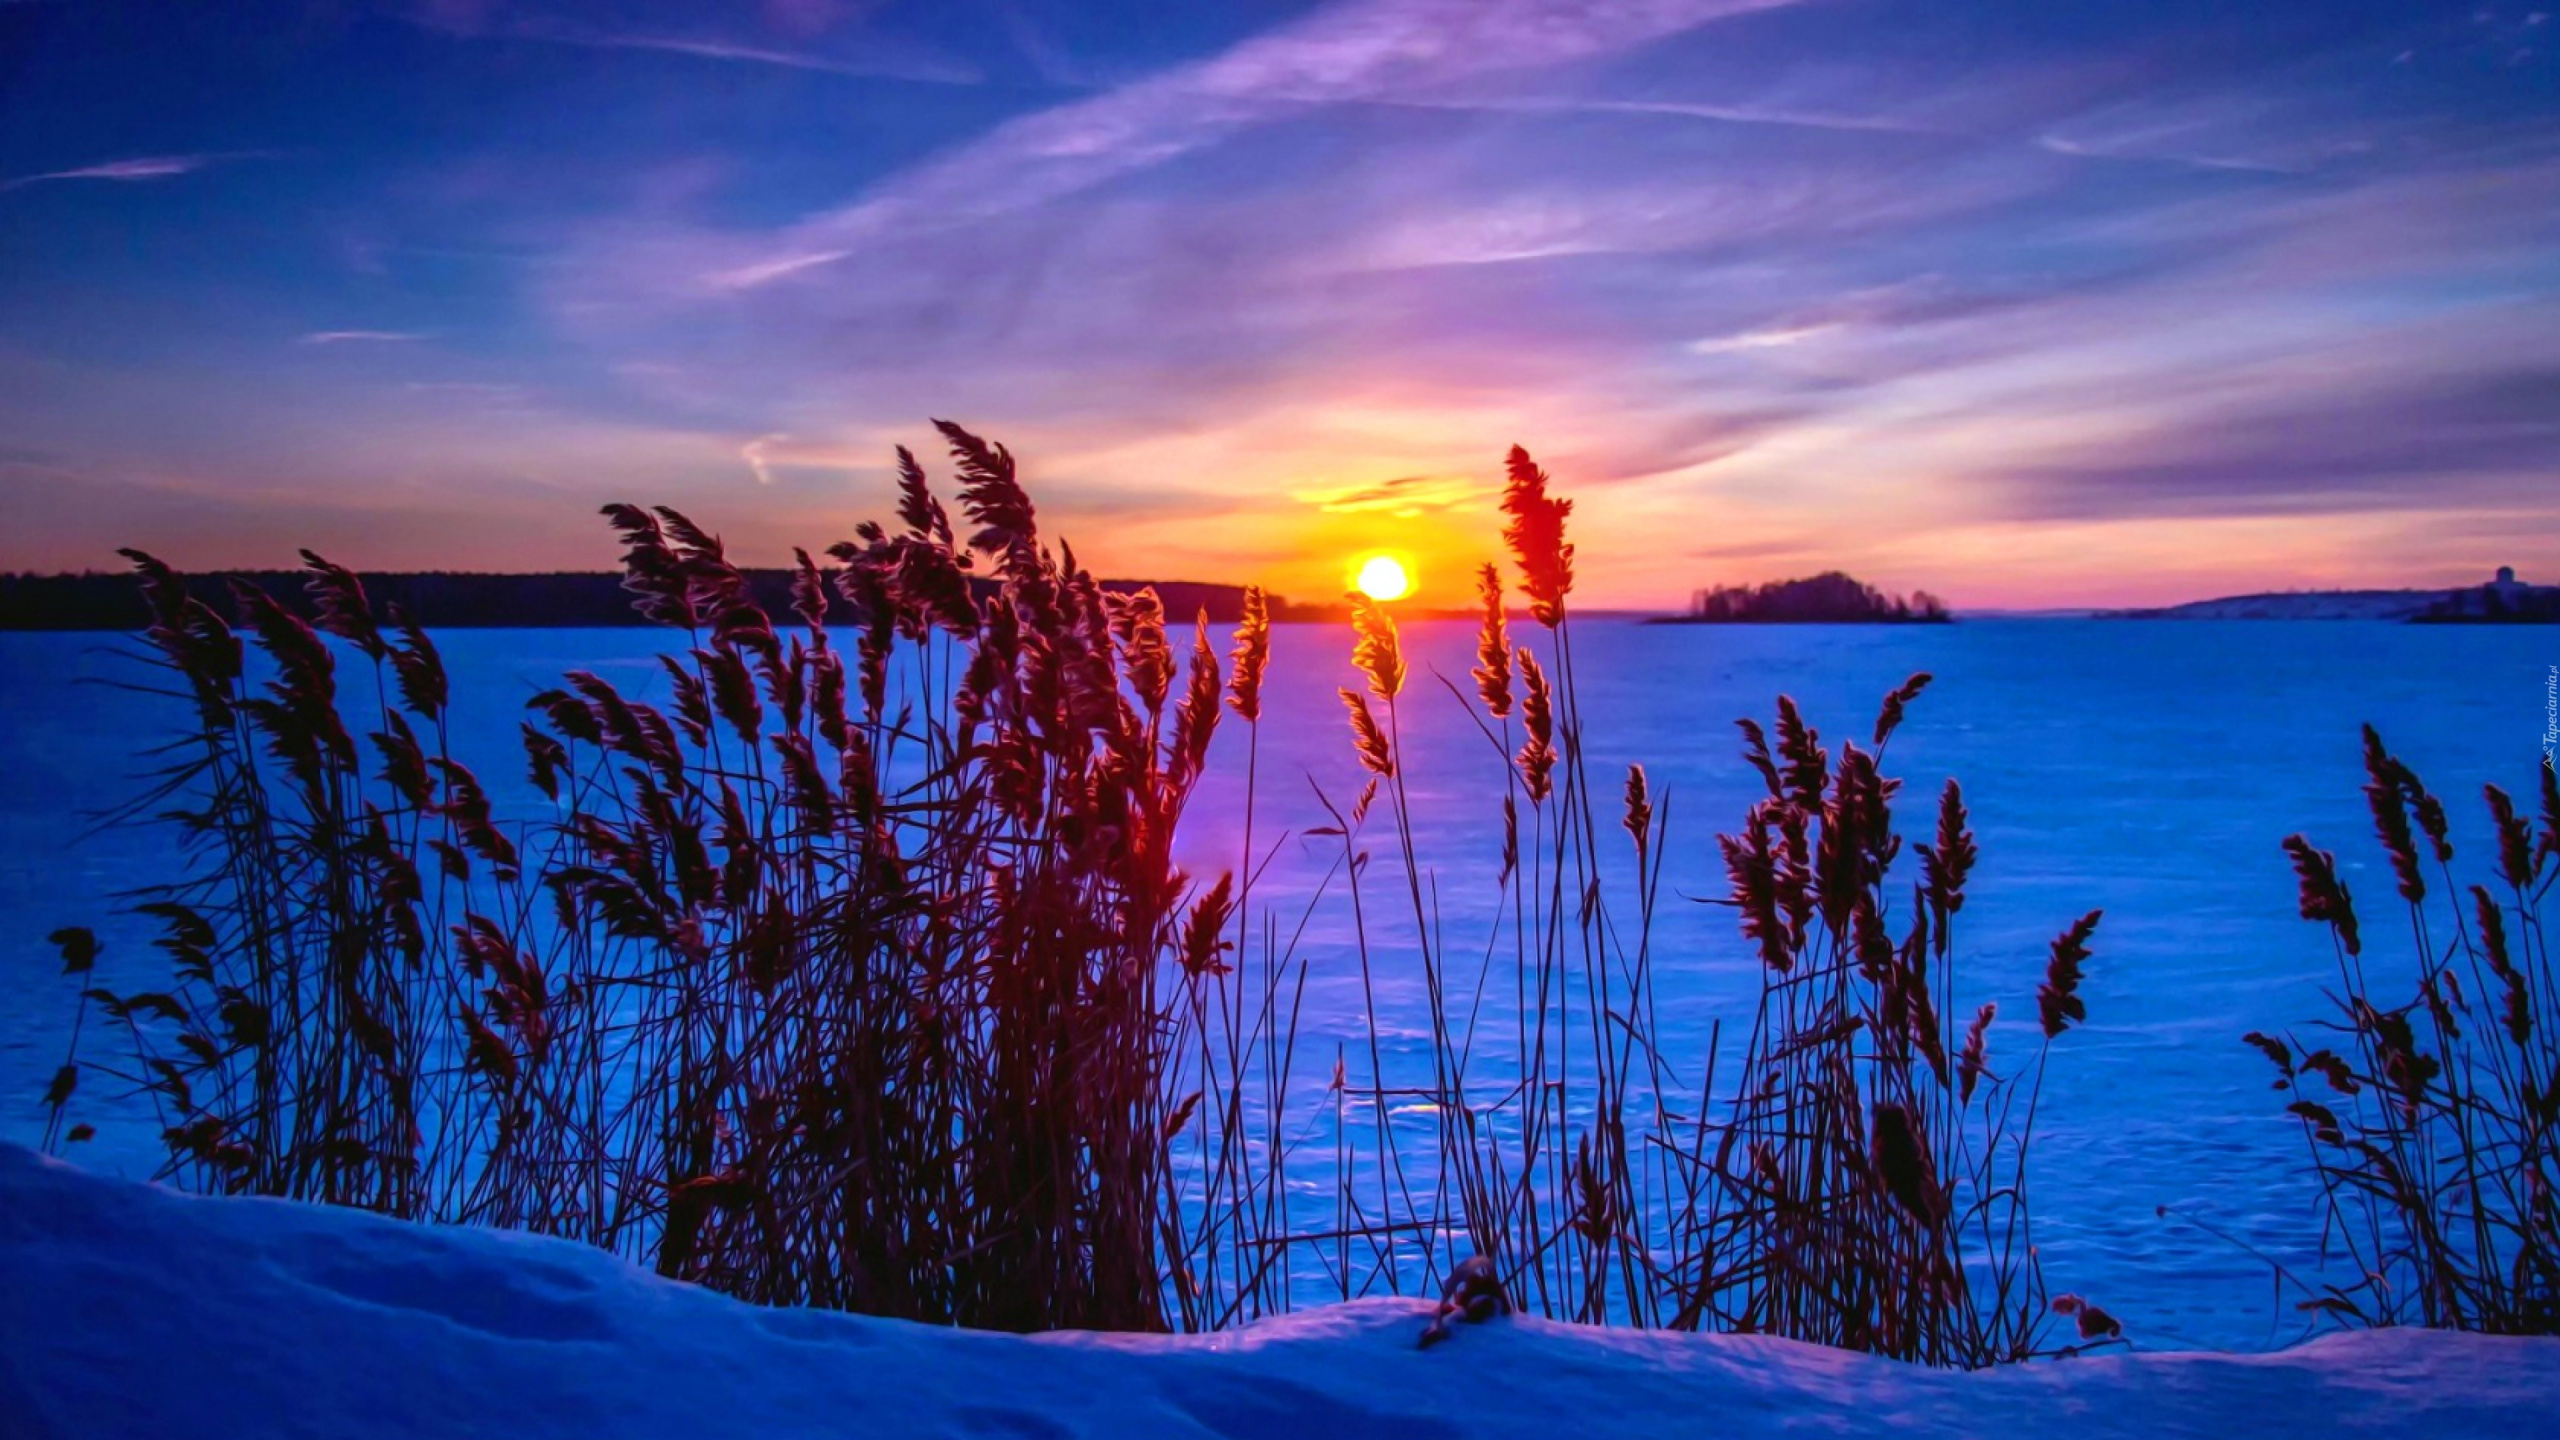 Sonnenuntergang, Winter, Schnee, Natur, Naturlandschaft. Wallpaper in 2560x1440 Resolution